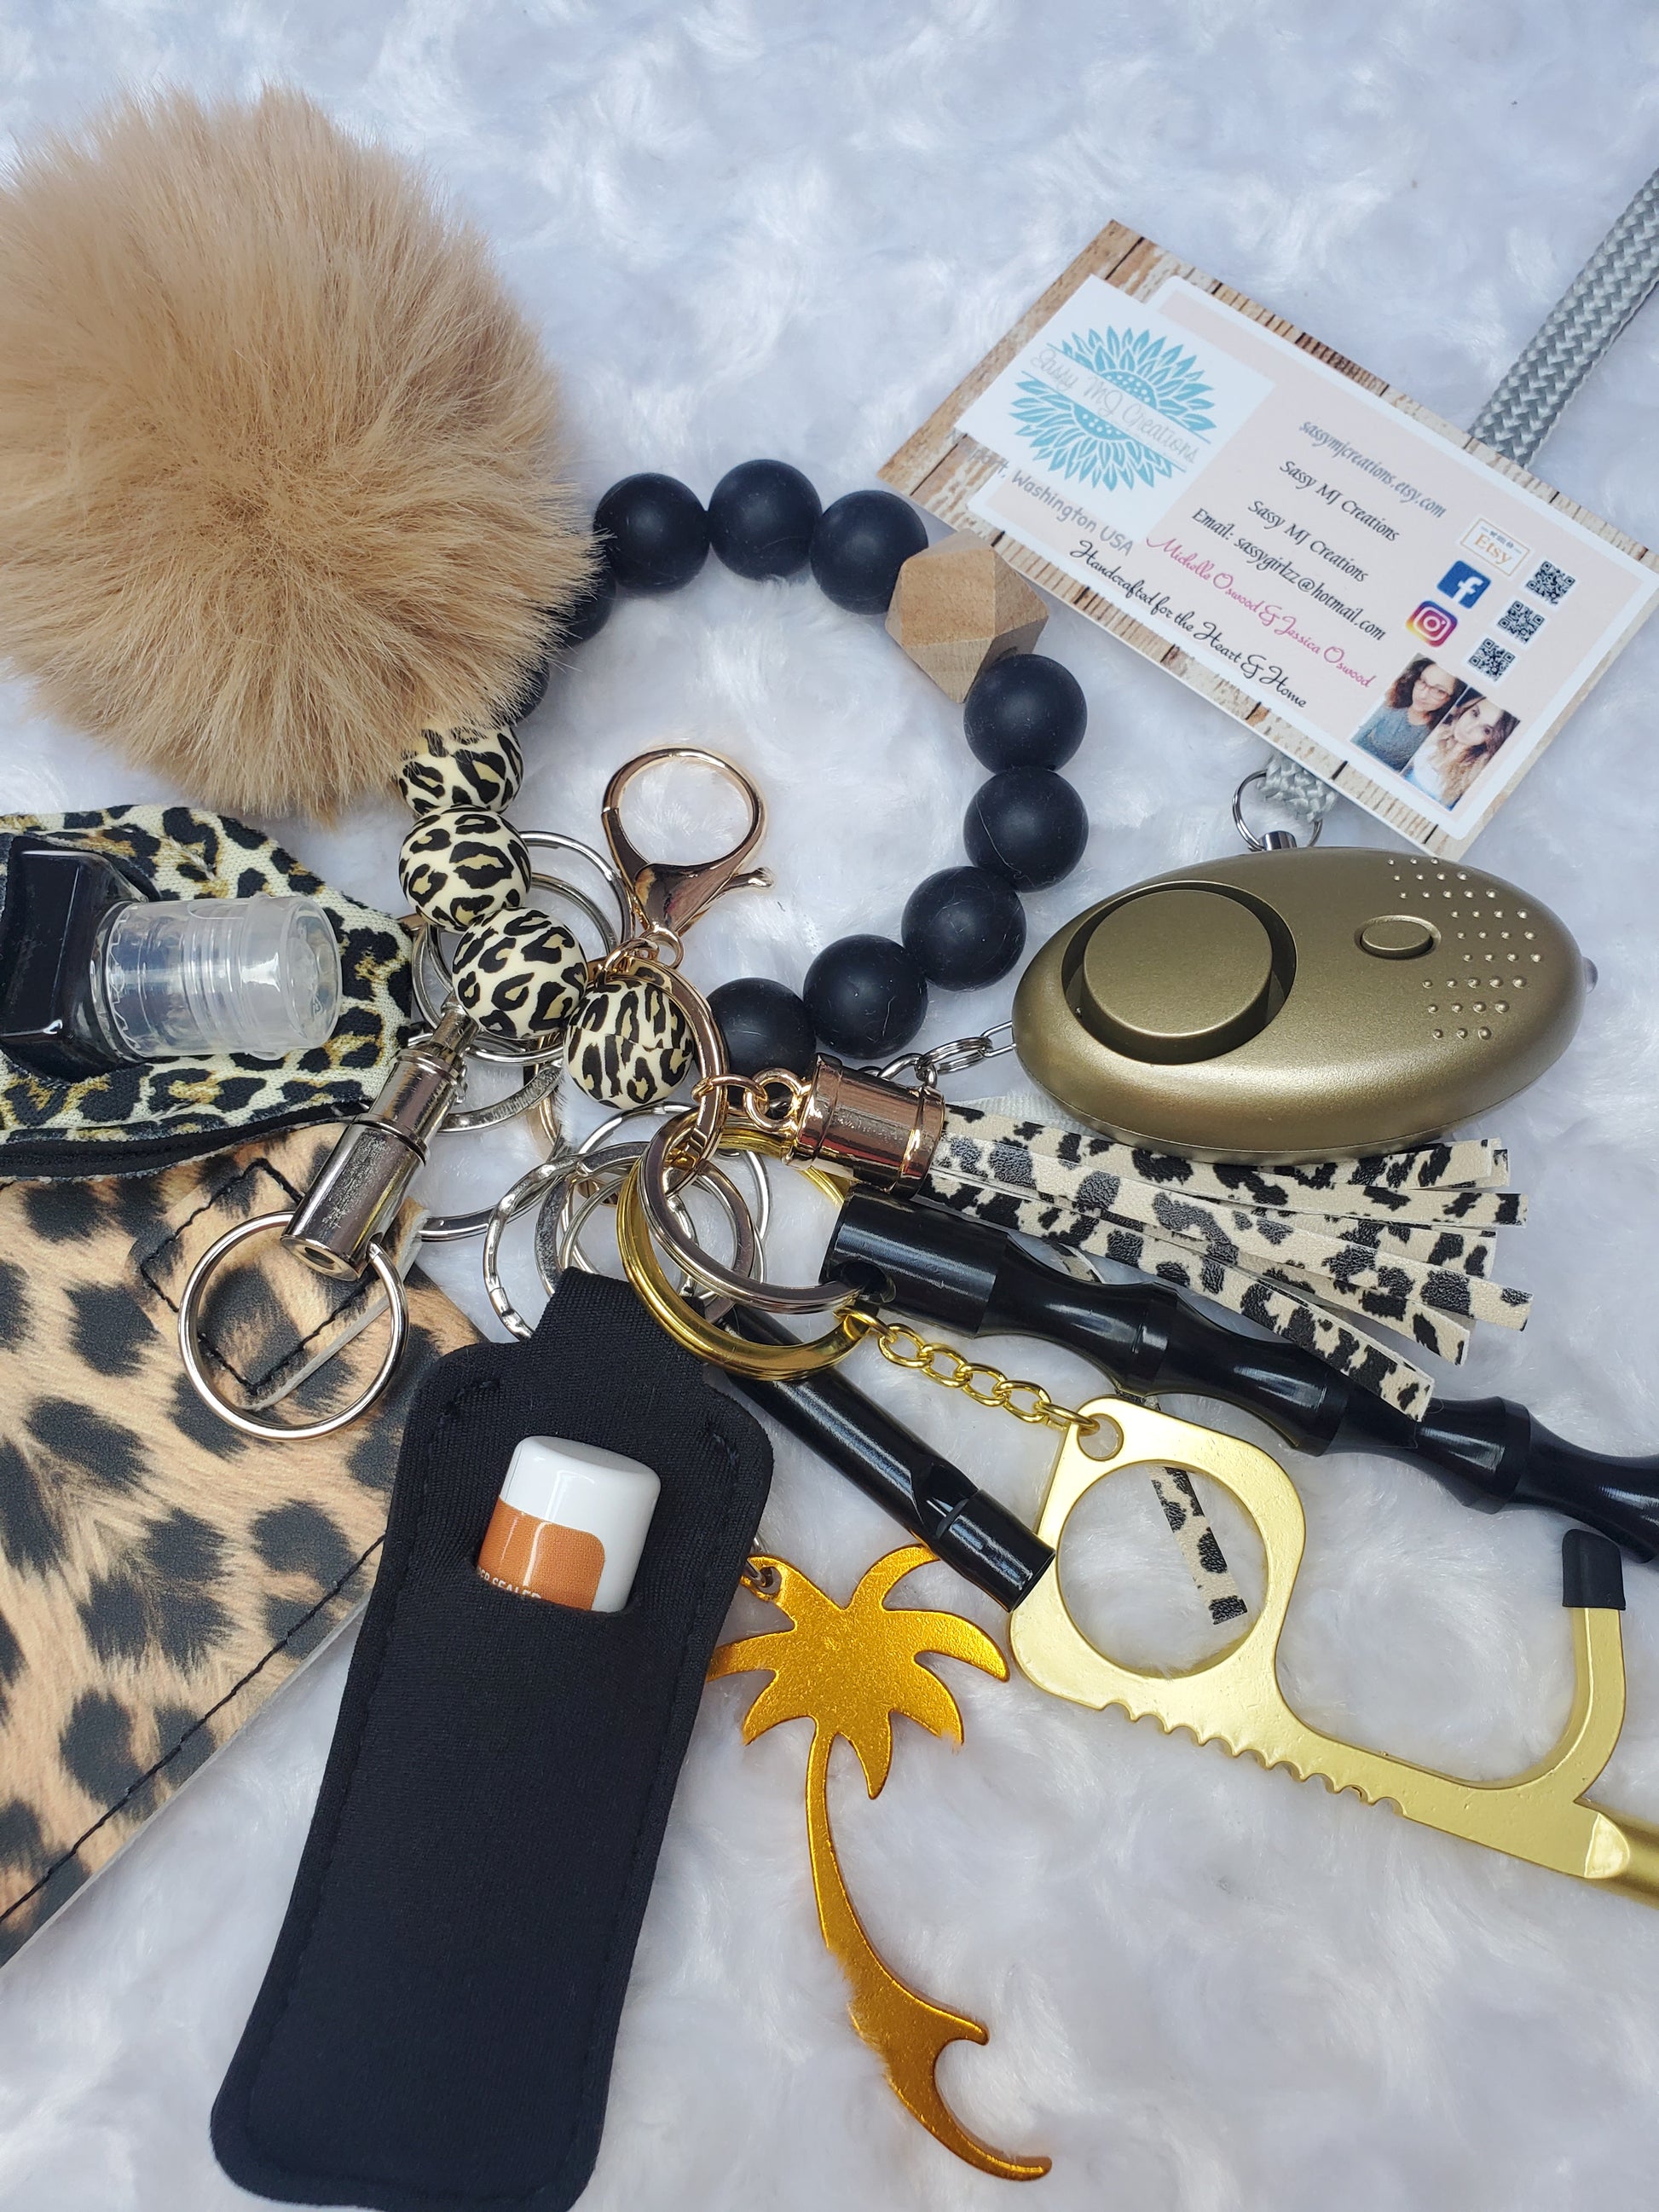 Buzzin Keychain Kit – Sassy Bead Shoppe